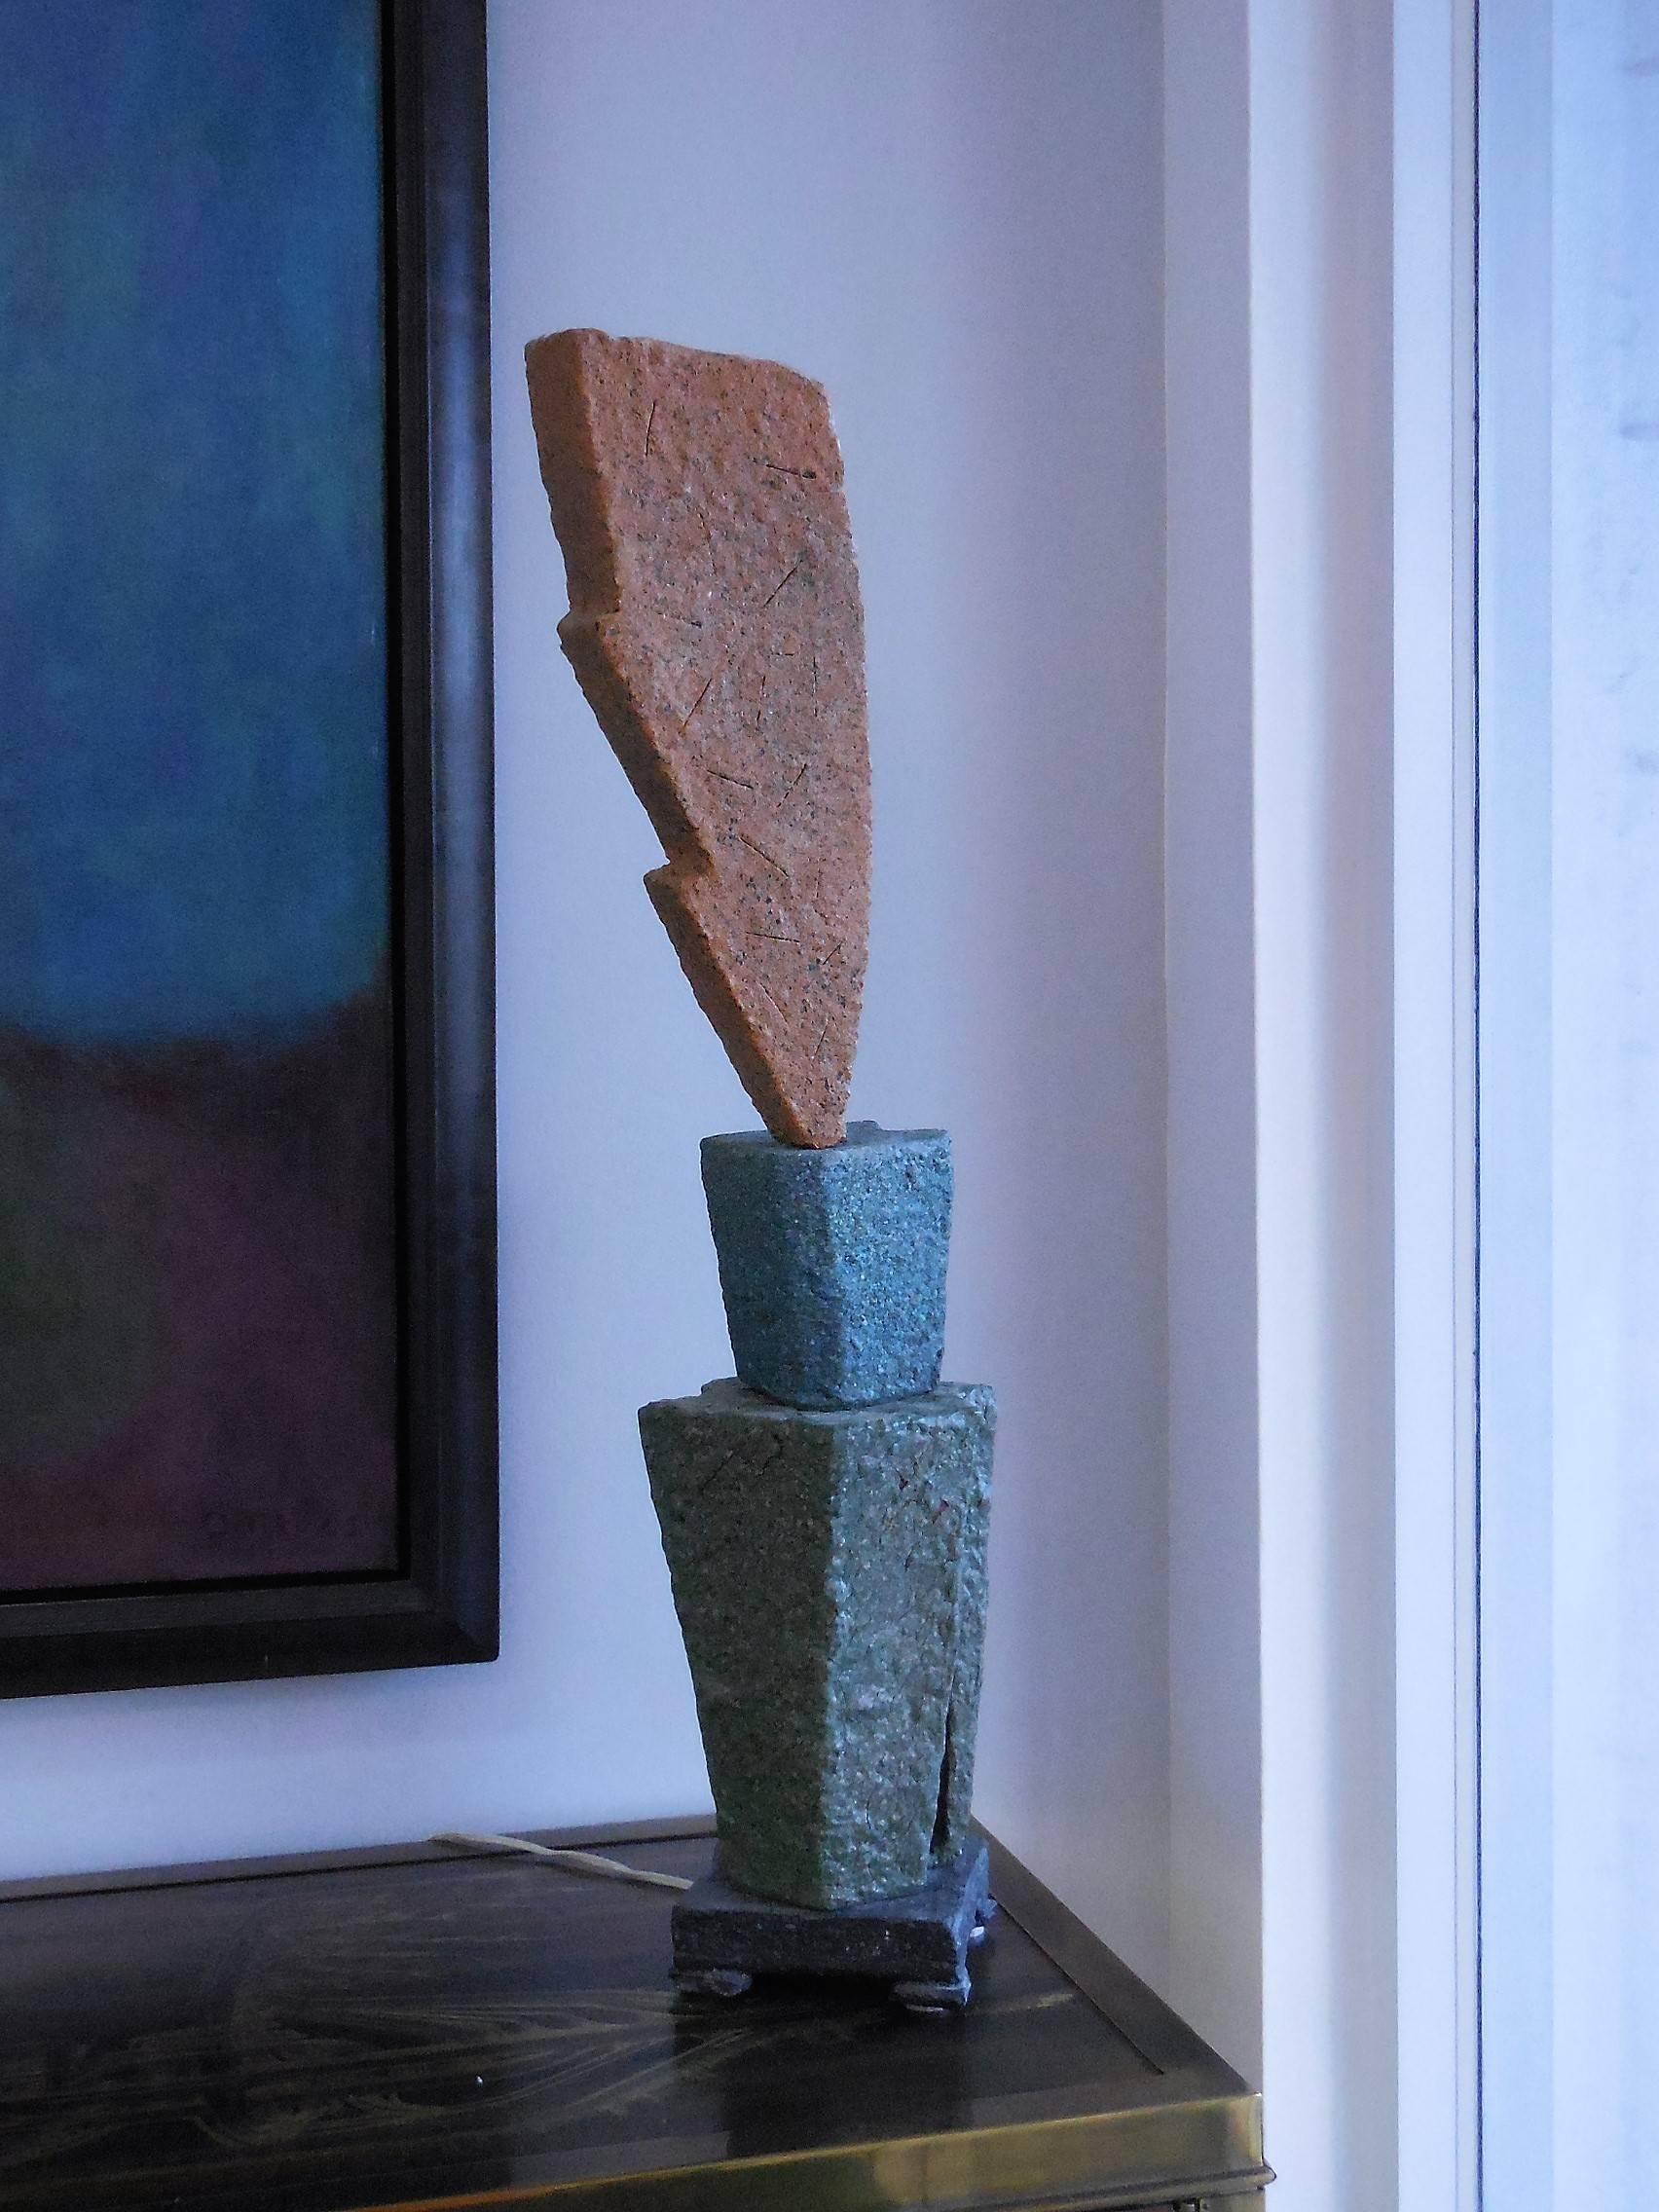 Einzigartige Keramiklampe. Hergestellt aus drei handgeformten (nicht gedrehten oder gegossenen) Keramikelementen in verschiedenen Formen und Farben. Die Glasuren sind dick und strukturiert. Die Glühbirne kommt auf den oberen Teil. Faszinierend und